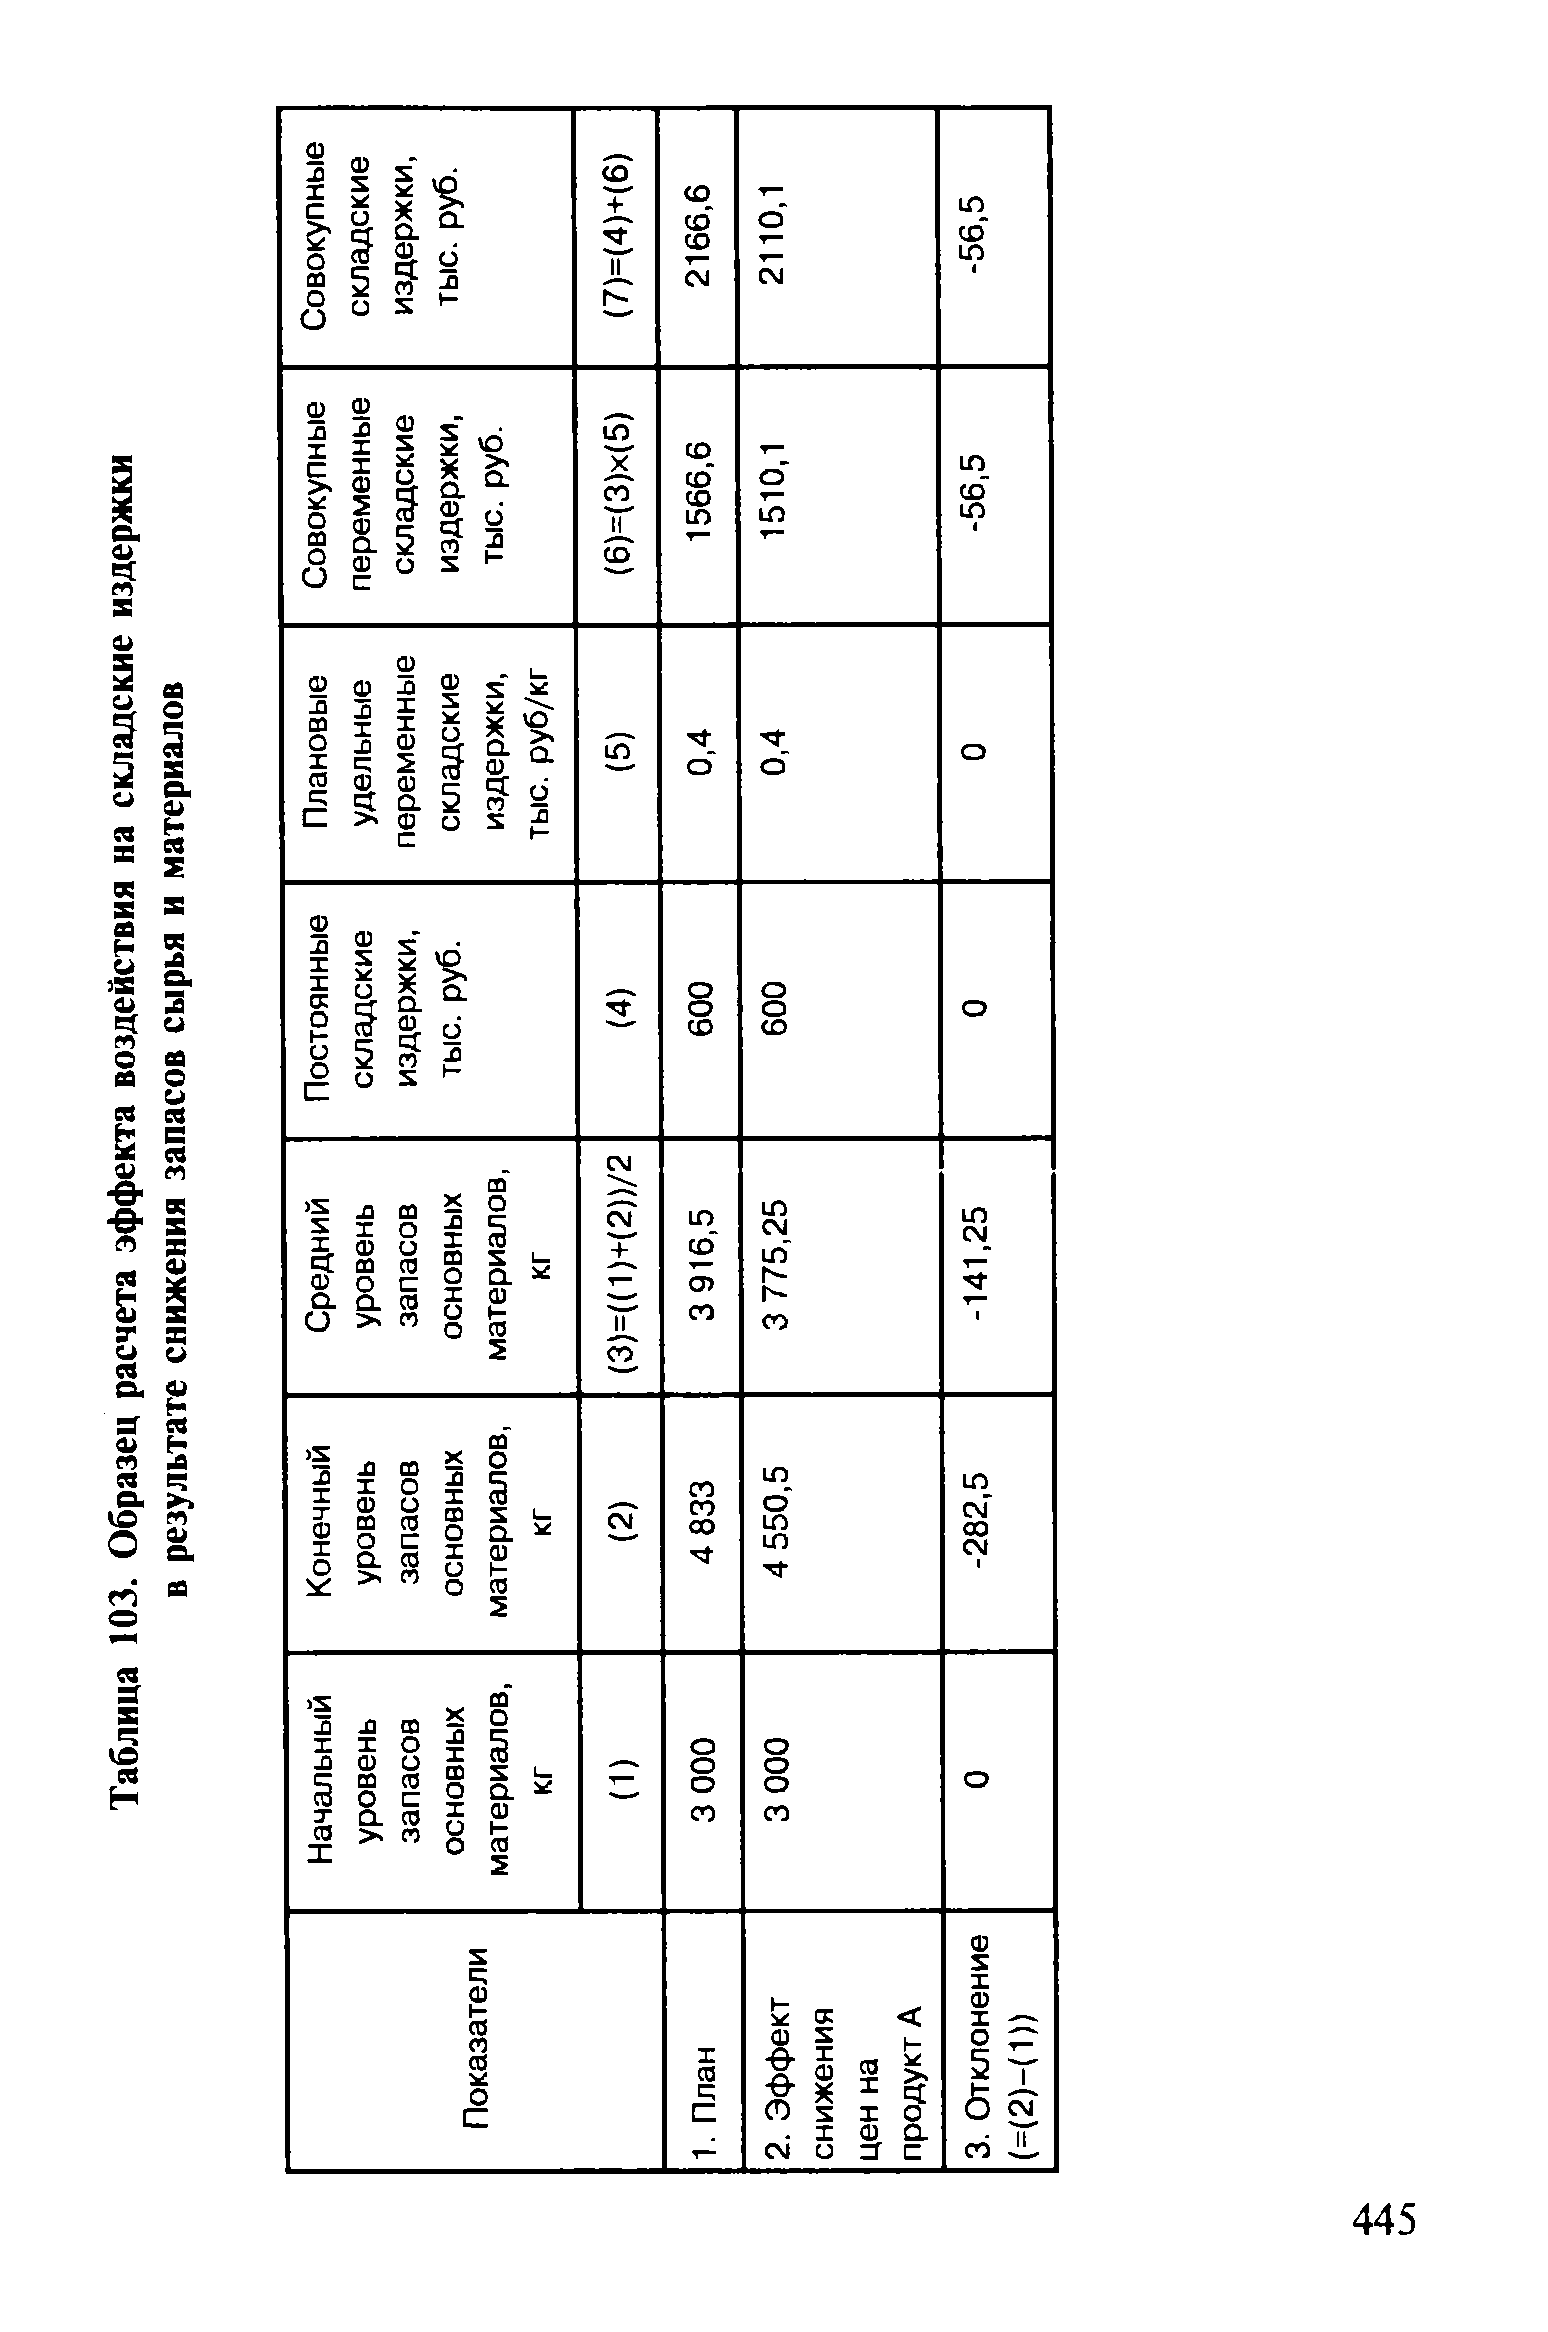 Таблица 103. Образец расчета эффекта воздействия на складские издержки в результате снижения запасов сырья и материалов
